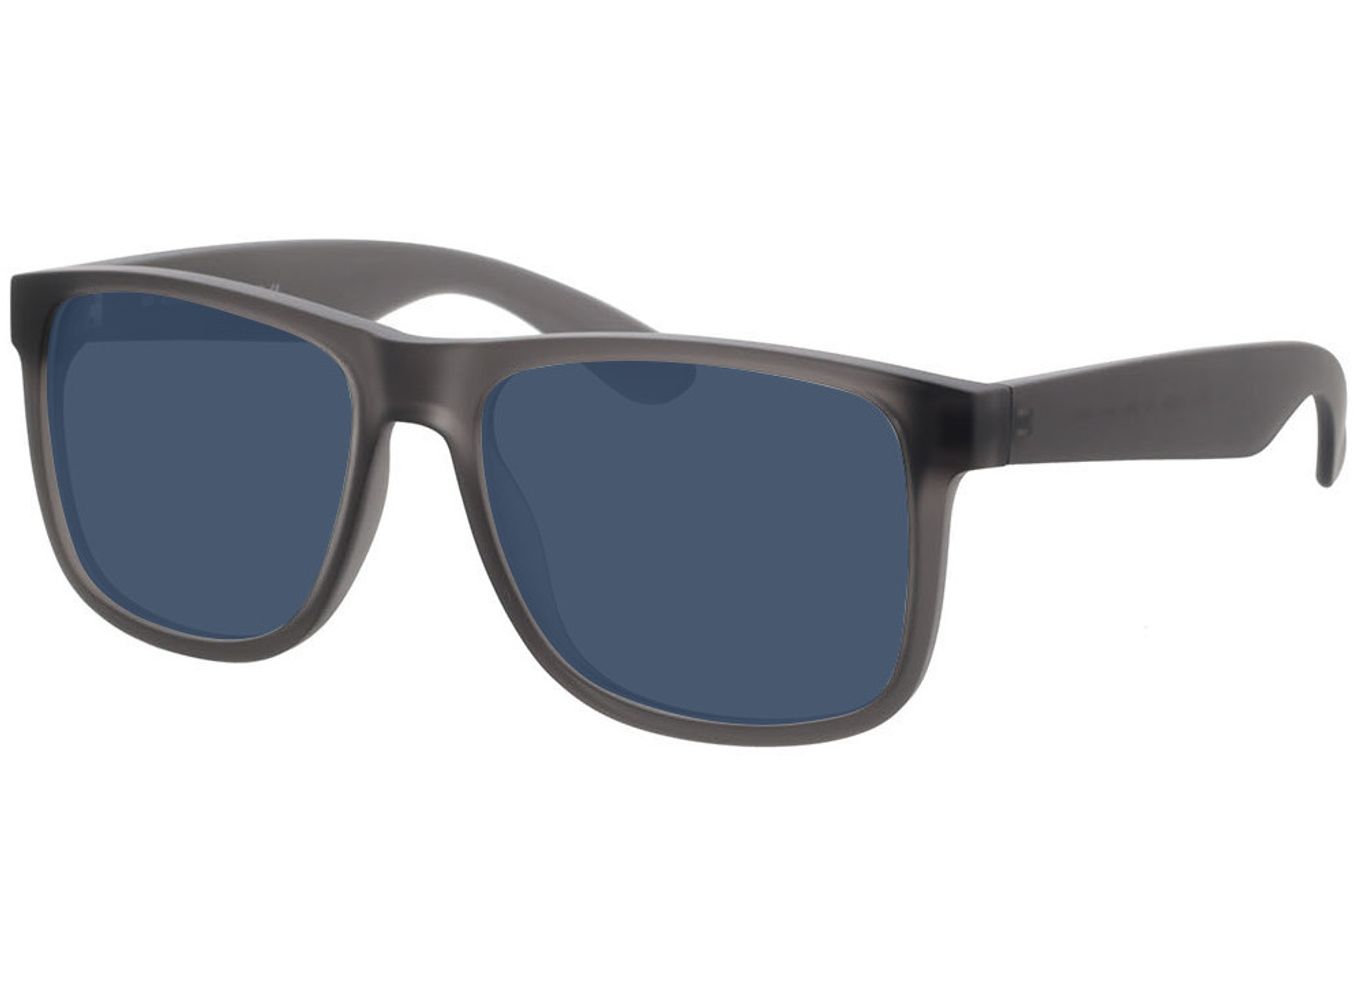 New Orleans - grau Sonnenbrille ohne Sehstärke, Vollrand, Eckig von Brille24 Collection